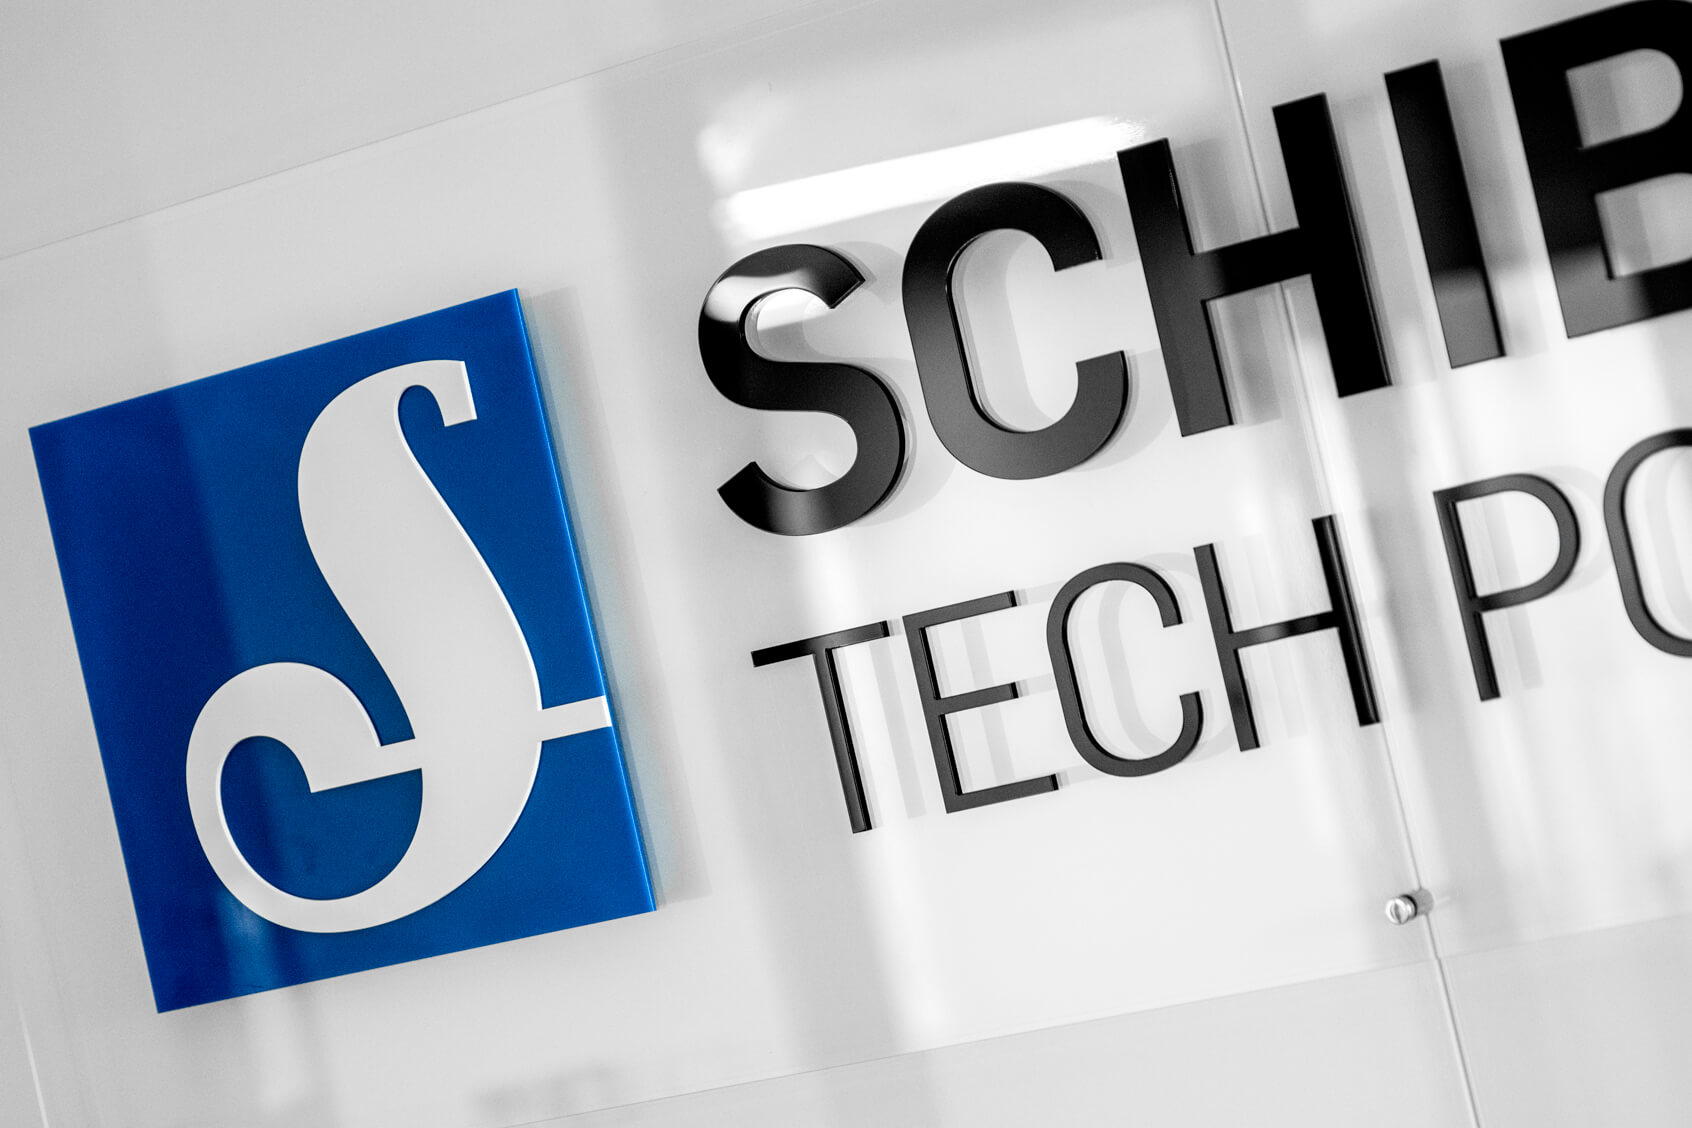 Schibsted Tech Polonia - Schibsted Tech Poland - logo e lettere 3D su supporto in plexiglass montati su distanziatori nell'area della reception